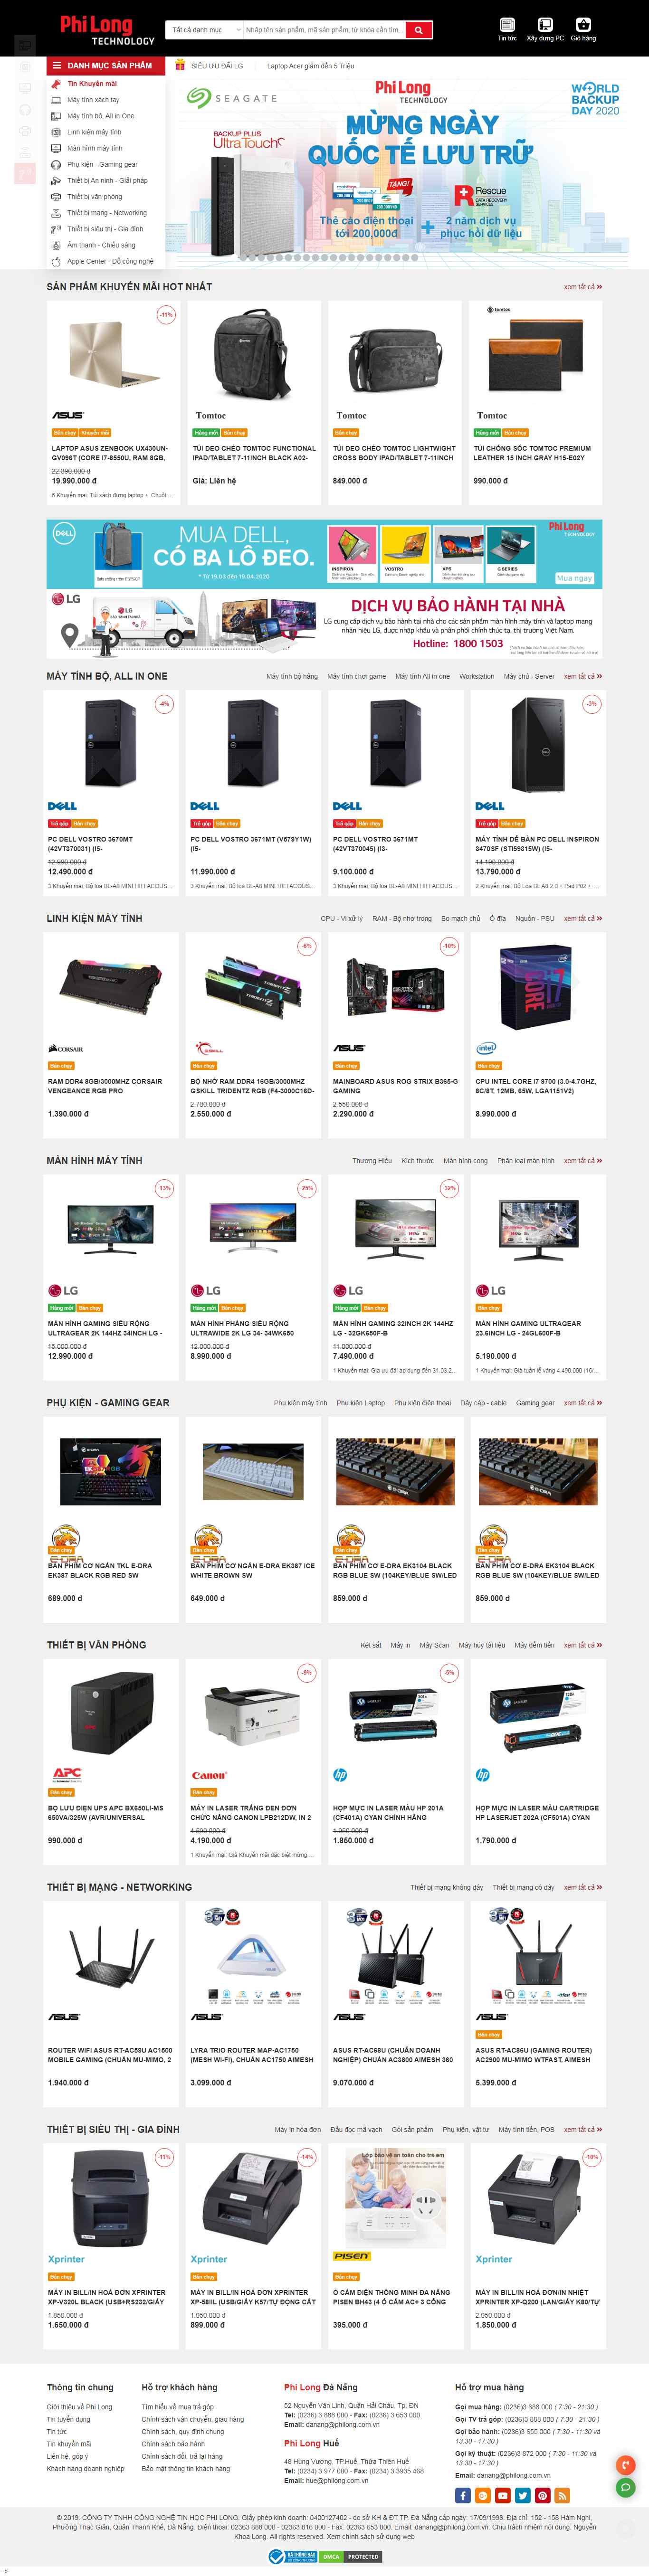 Thiết kế Website thiết bị máy tính - philong.com.vn